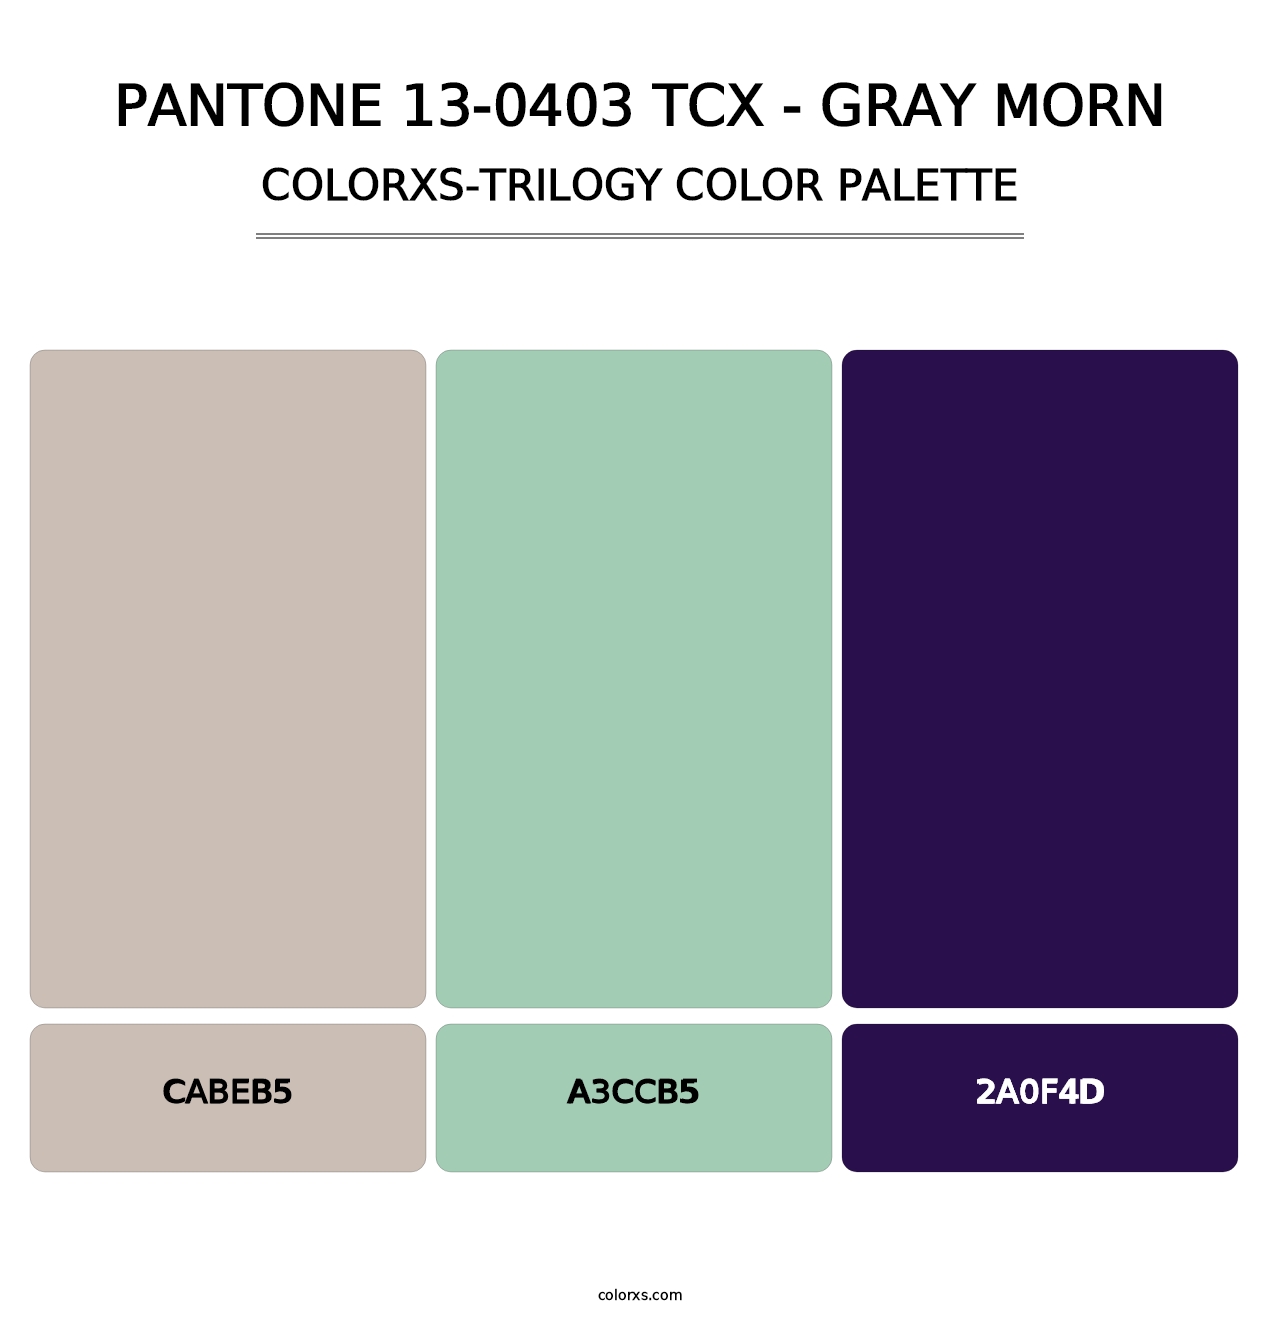 PANTONE 13-0403 TCX - Gray Morn - Colorxs Trilogy Palette